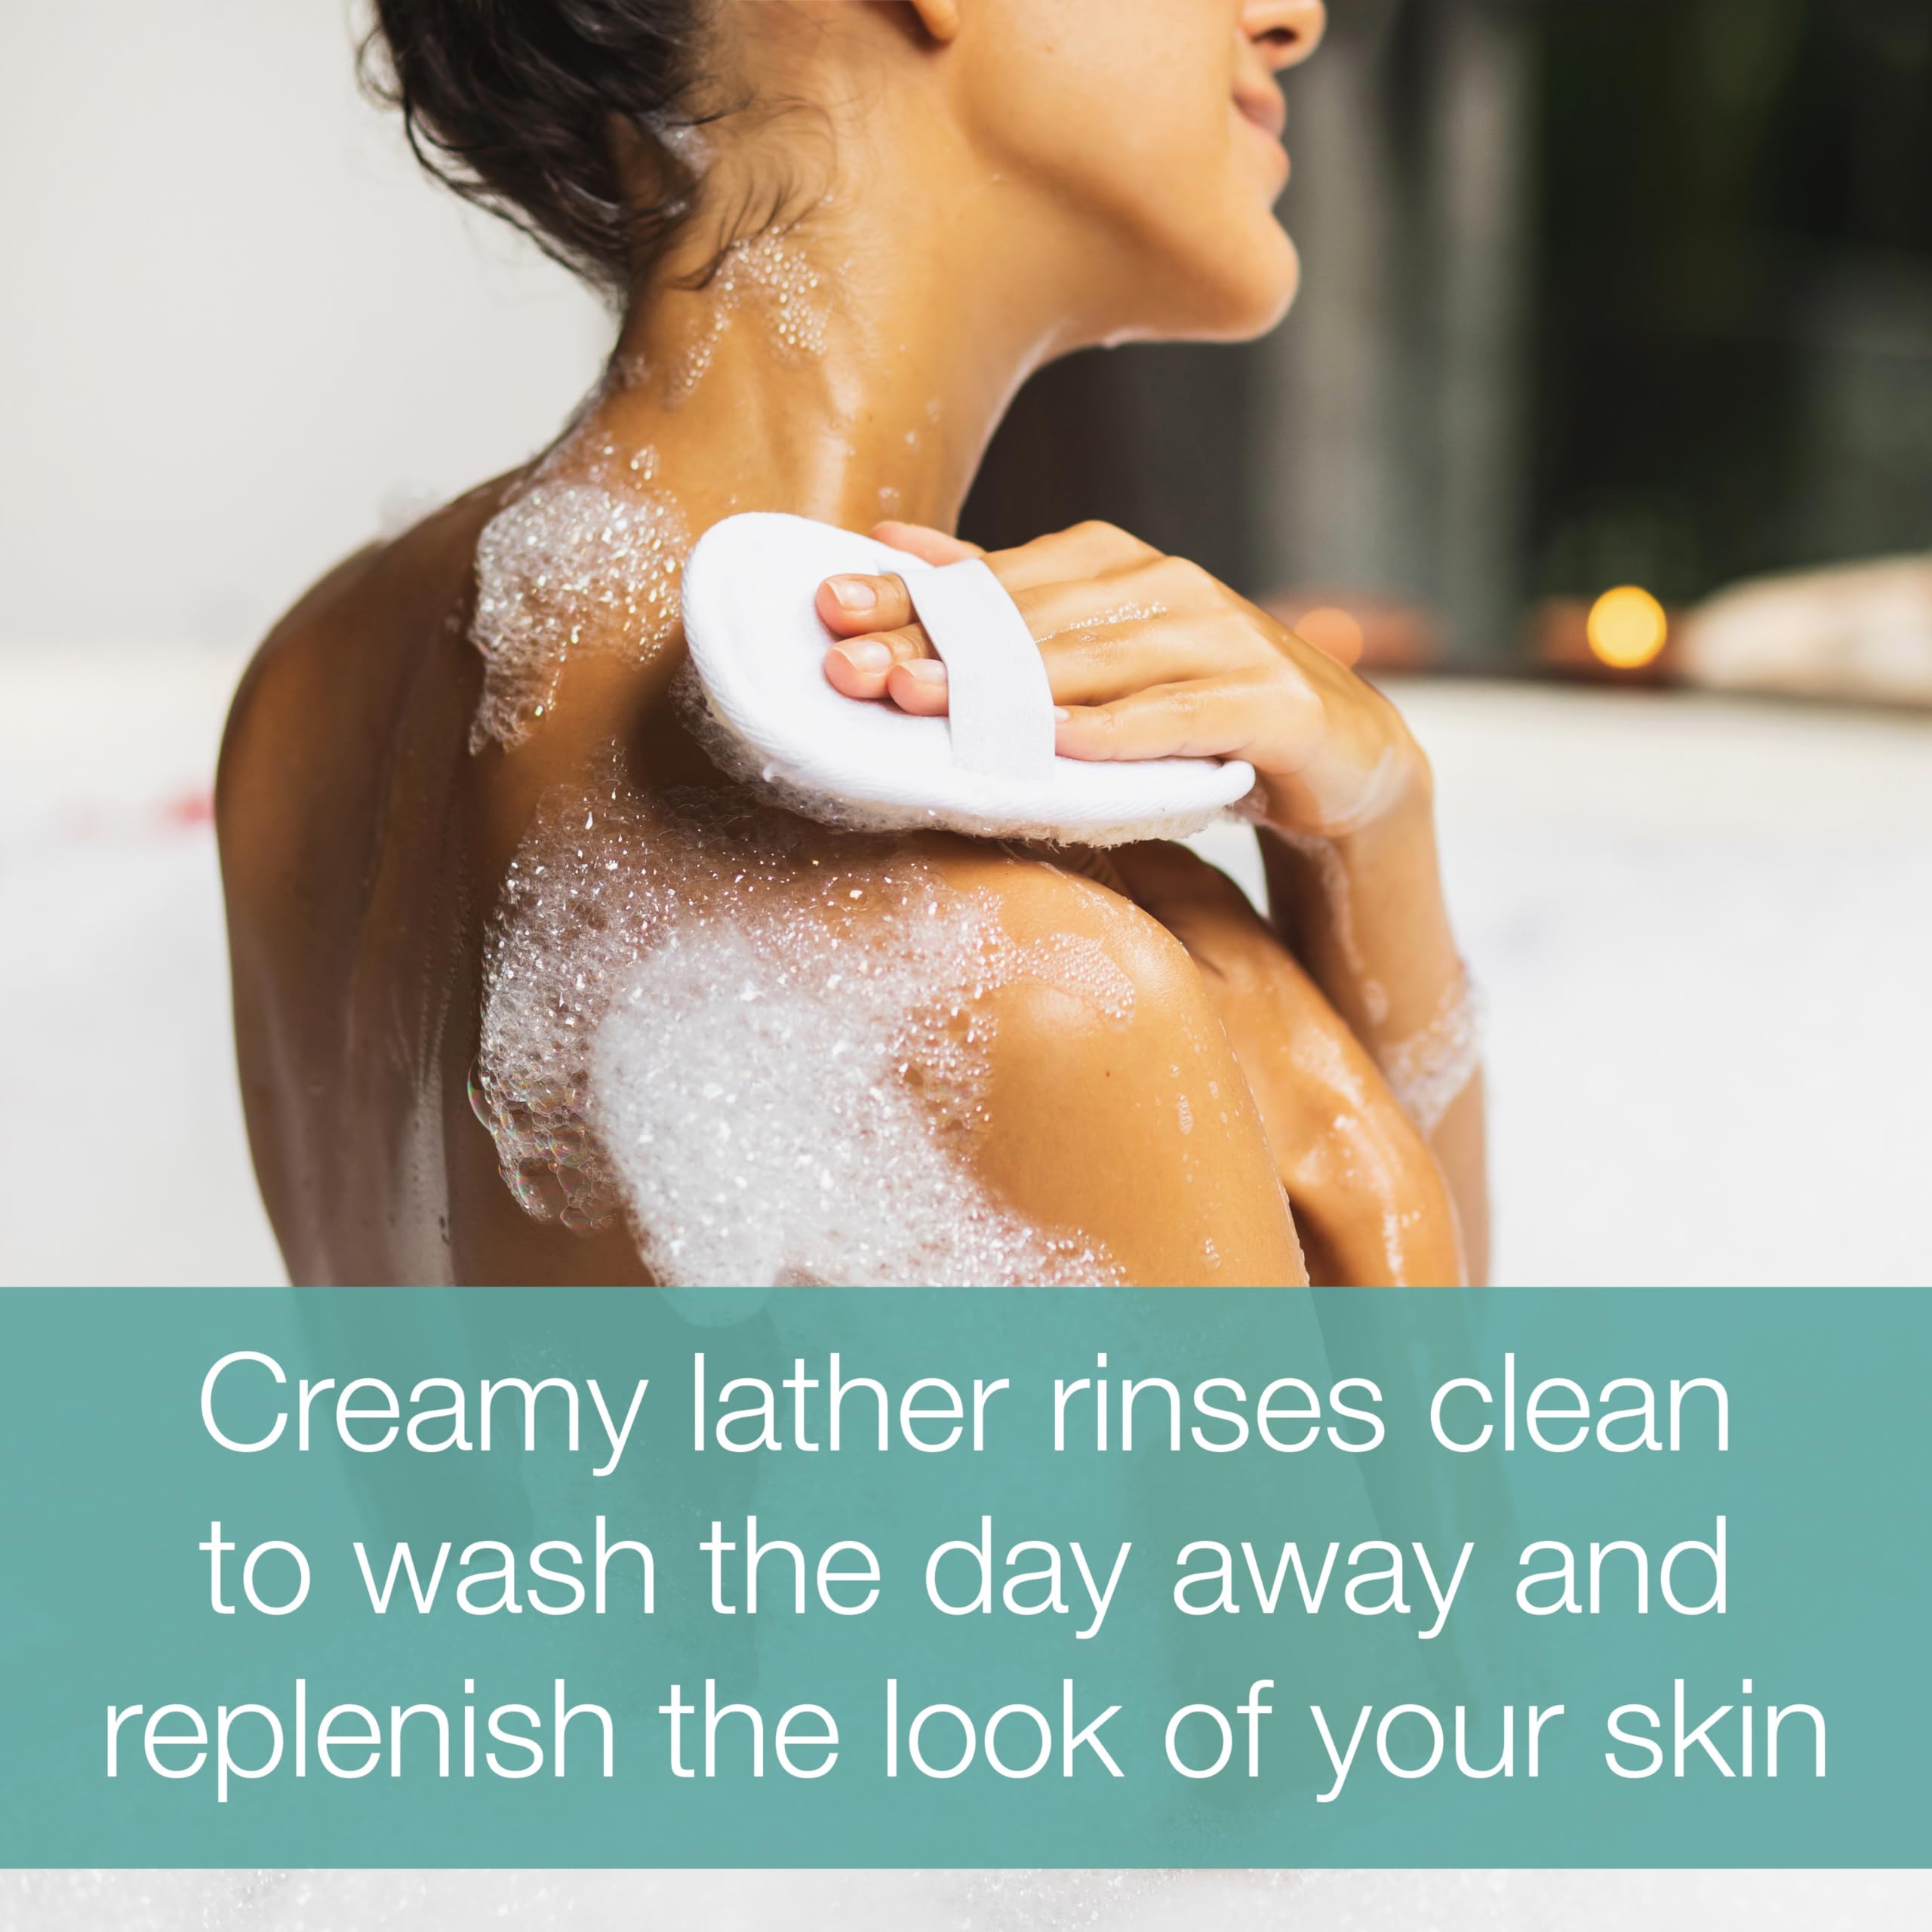 Neutrogena Rainbath Refreshing & Cleansing Shower & Bath Gel, Moisturizing Daily Body Wash & Shaving Gel for Soft Skin, Two Pack Including Ocean Mist & Original Scents, 2 x 16 fl. oz